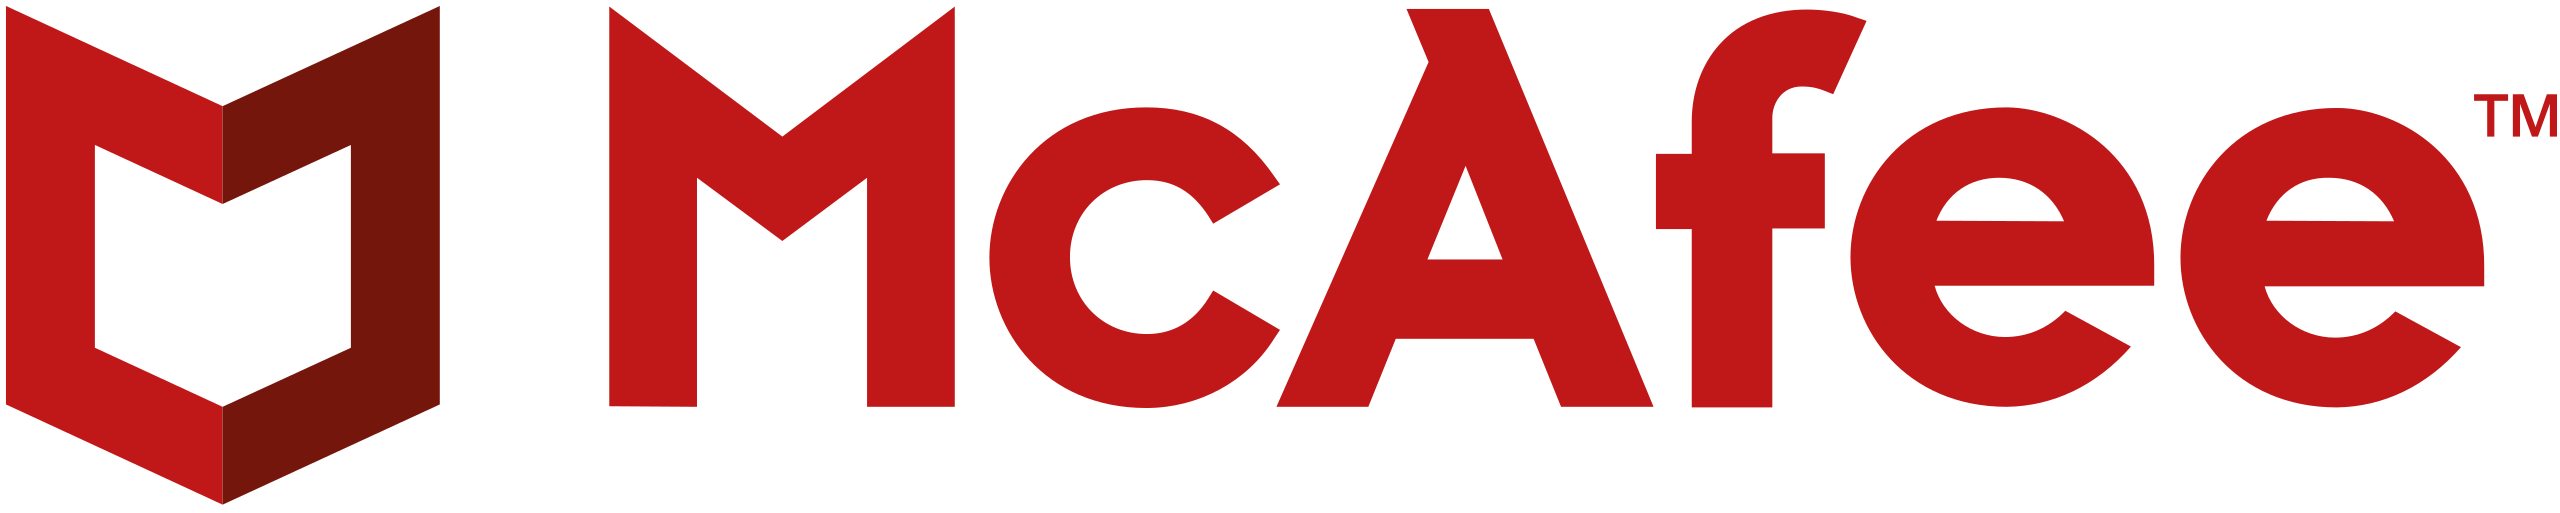 McAfee company logo